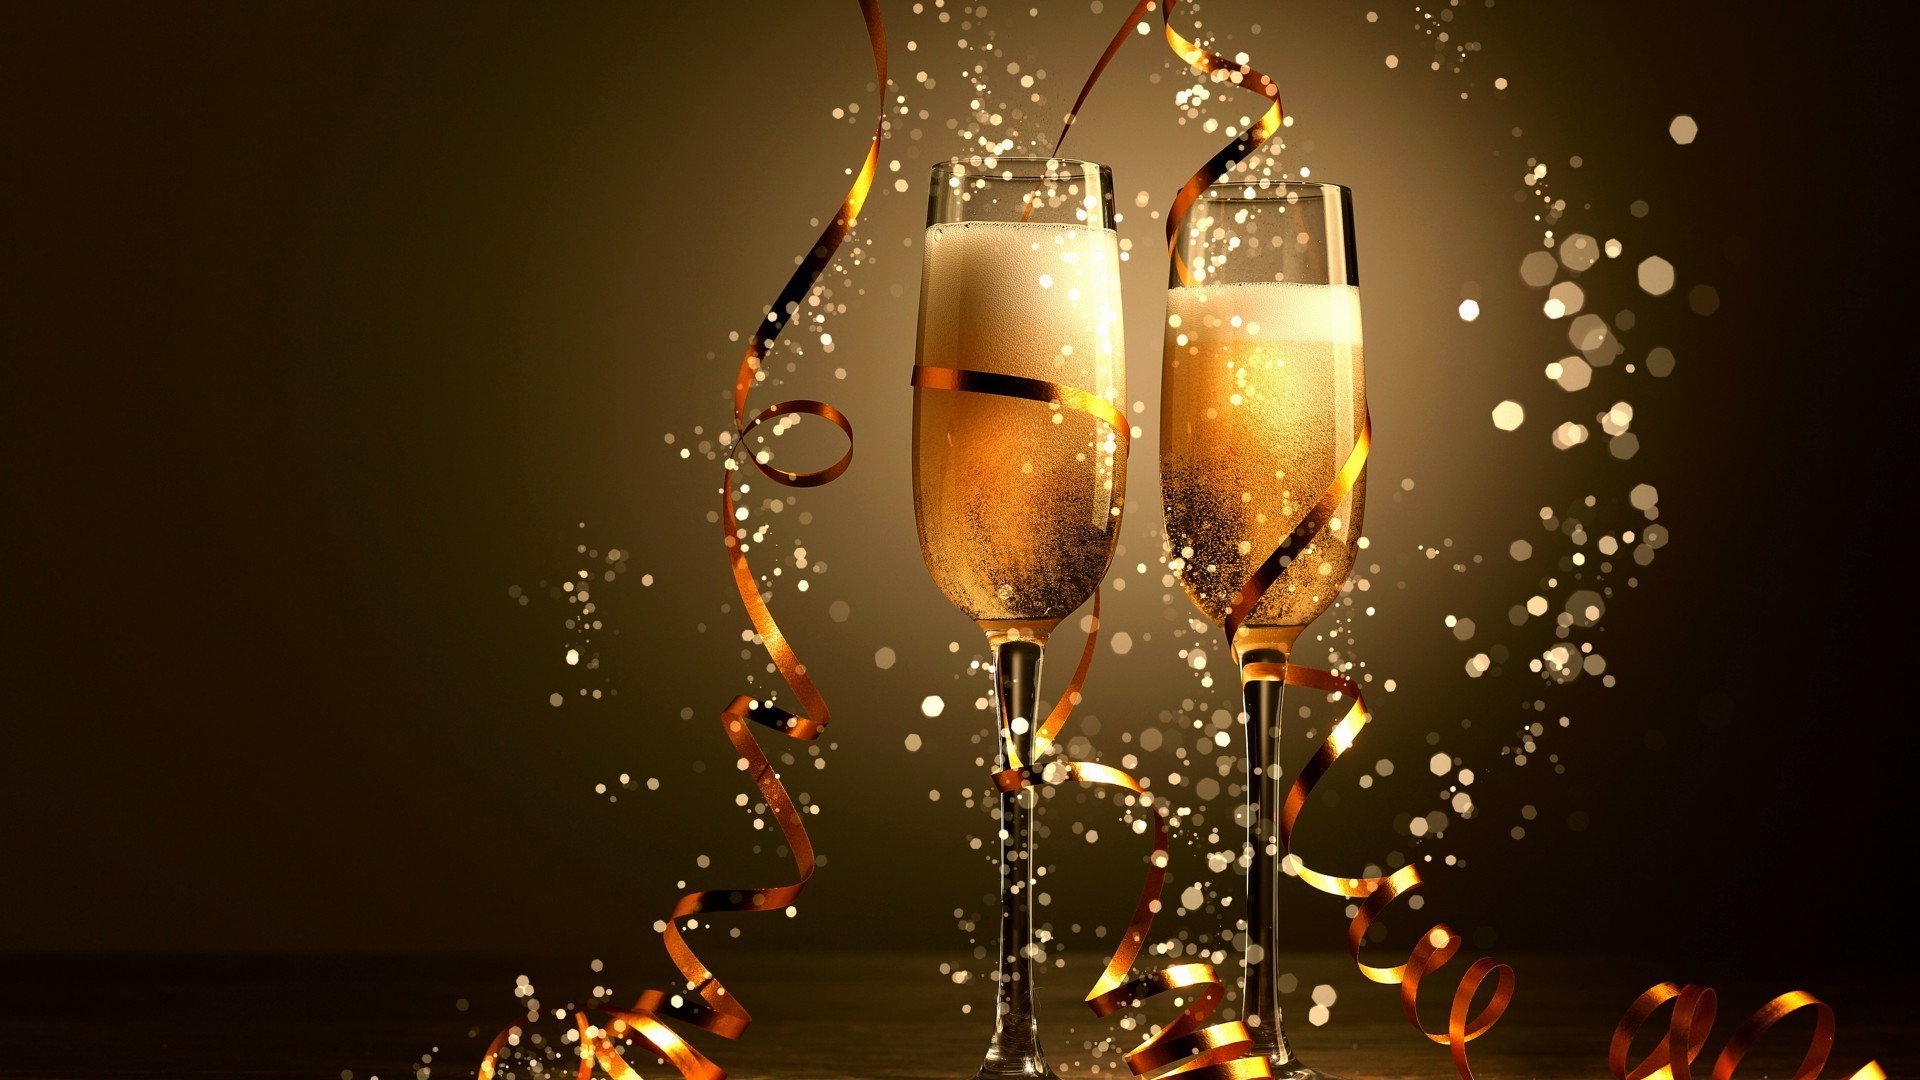 новый год шампанское праздник ева рождество участник стекло игристое юбилей вина случай алкоголь золото кристалл тост физз отпуск пить поздравляю специальные